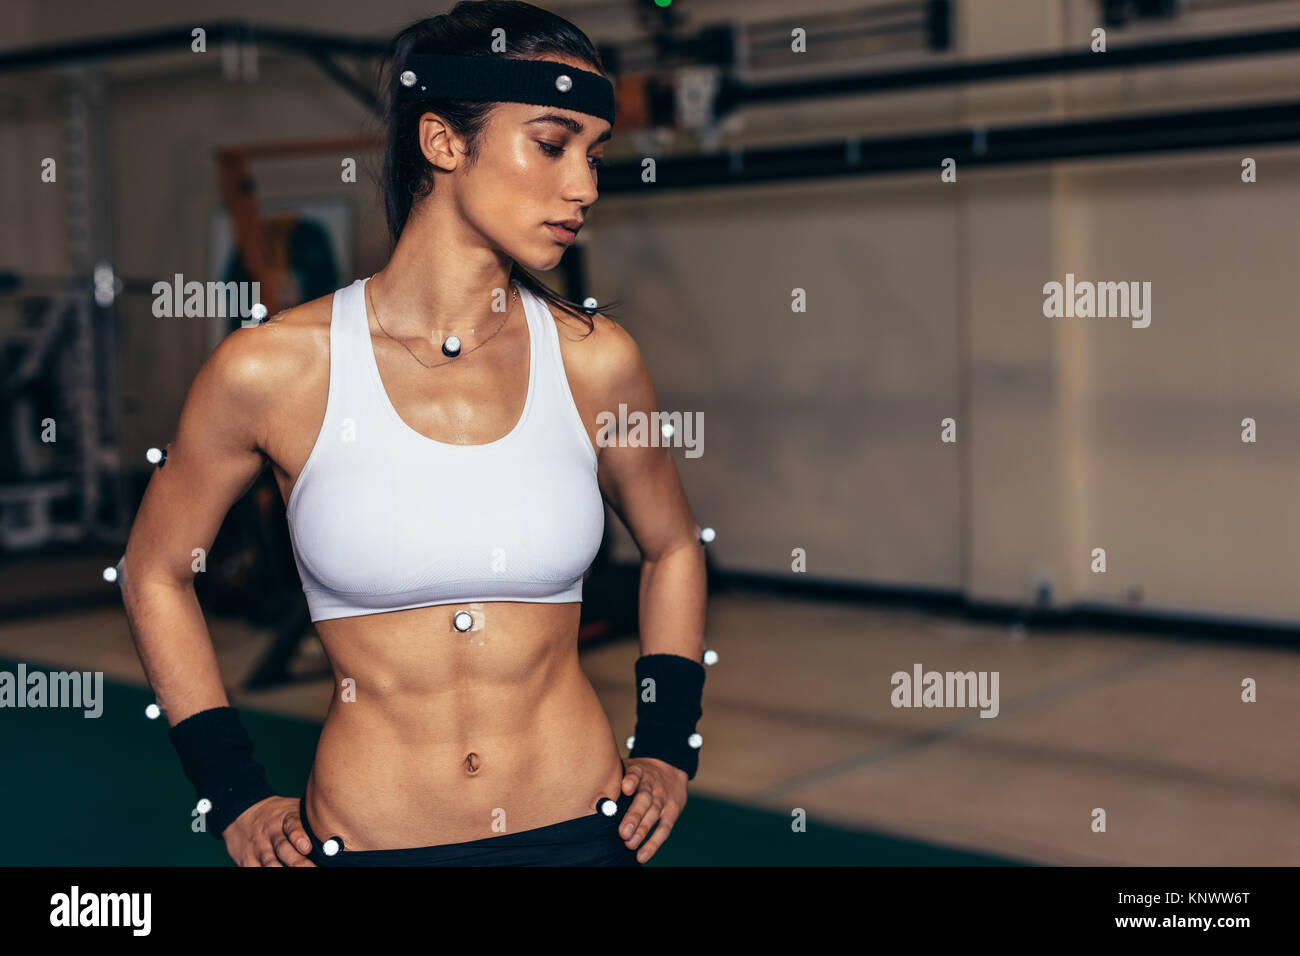 Biomechanik Labor. Weiblichen Athleten mit Motion Capturing Sensoren auf ihrem Körper die Bewegung und Leistung zu erfassen. Stockfoto